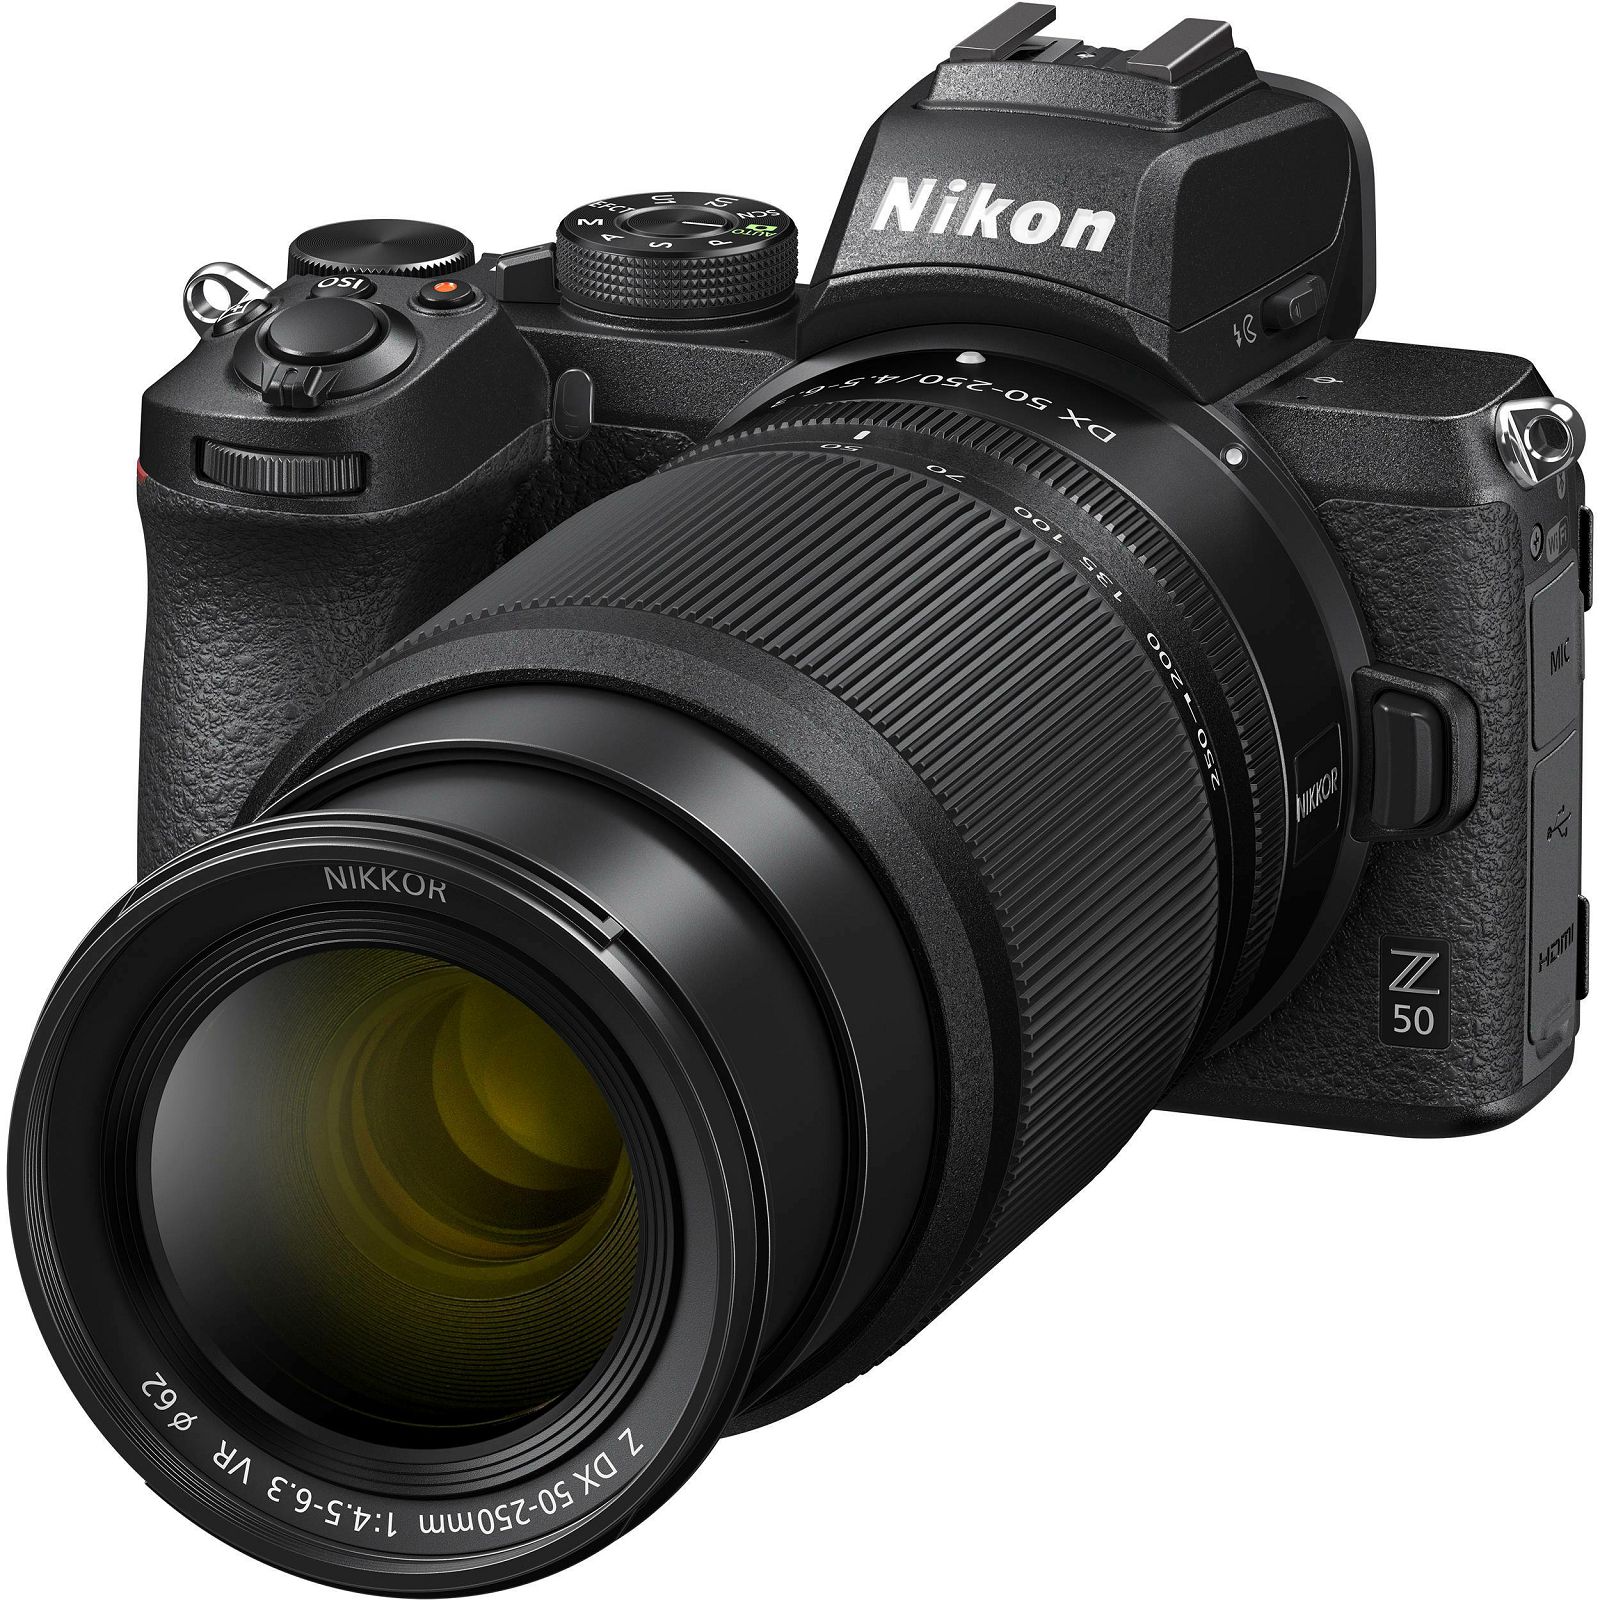 Nikon Z50 + Z 16-50mm f/3.5-6.3 VR + Z 50-250mm f/4.5-6.3 VR DX KIT Mirrorless Digital Camera bezrcalni digitalni fotoaparat tijelo s objektivima (VOA050K002)